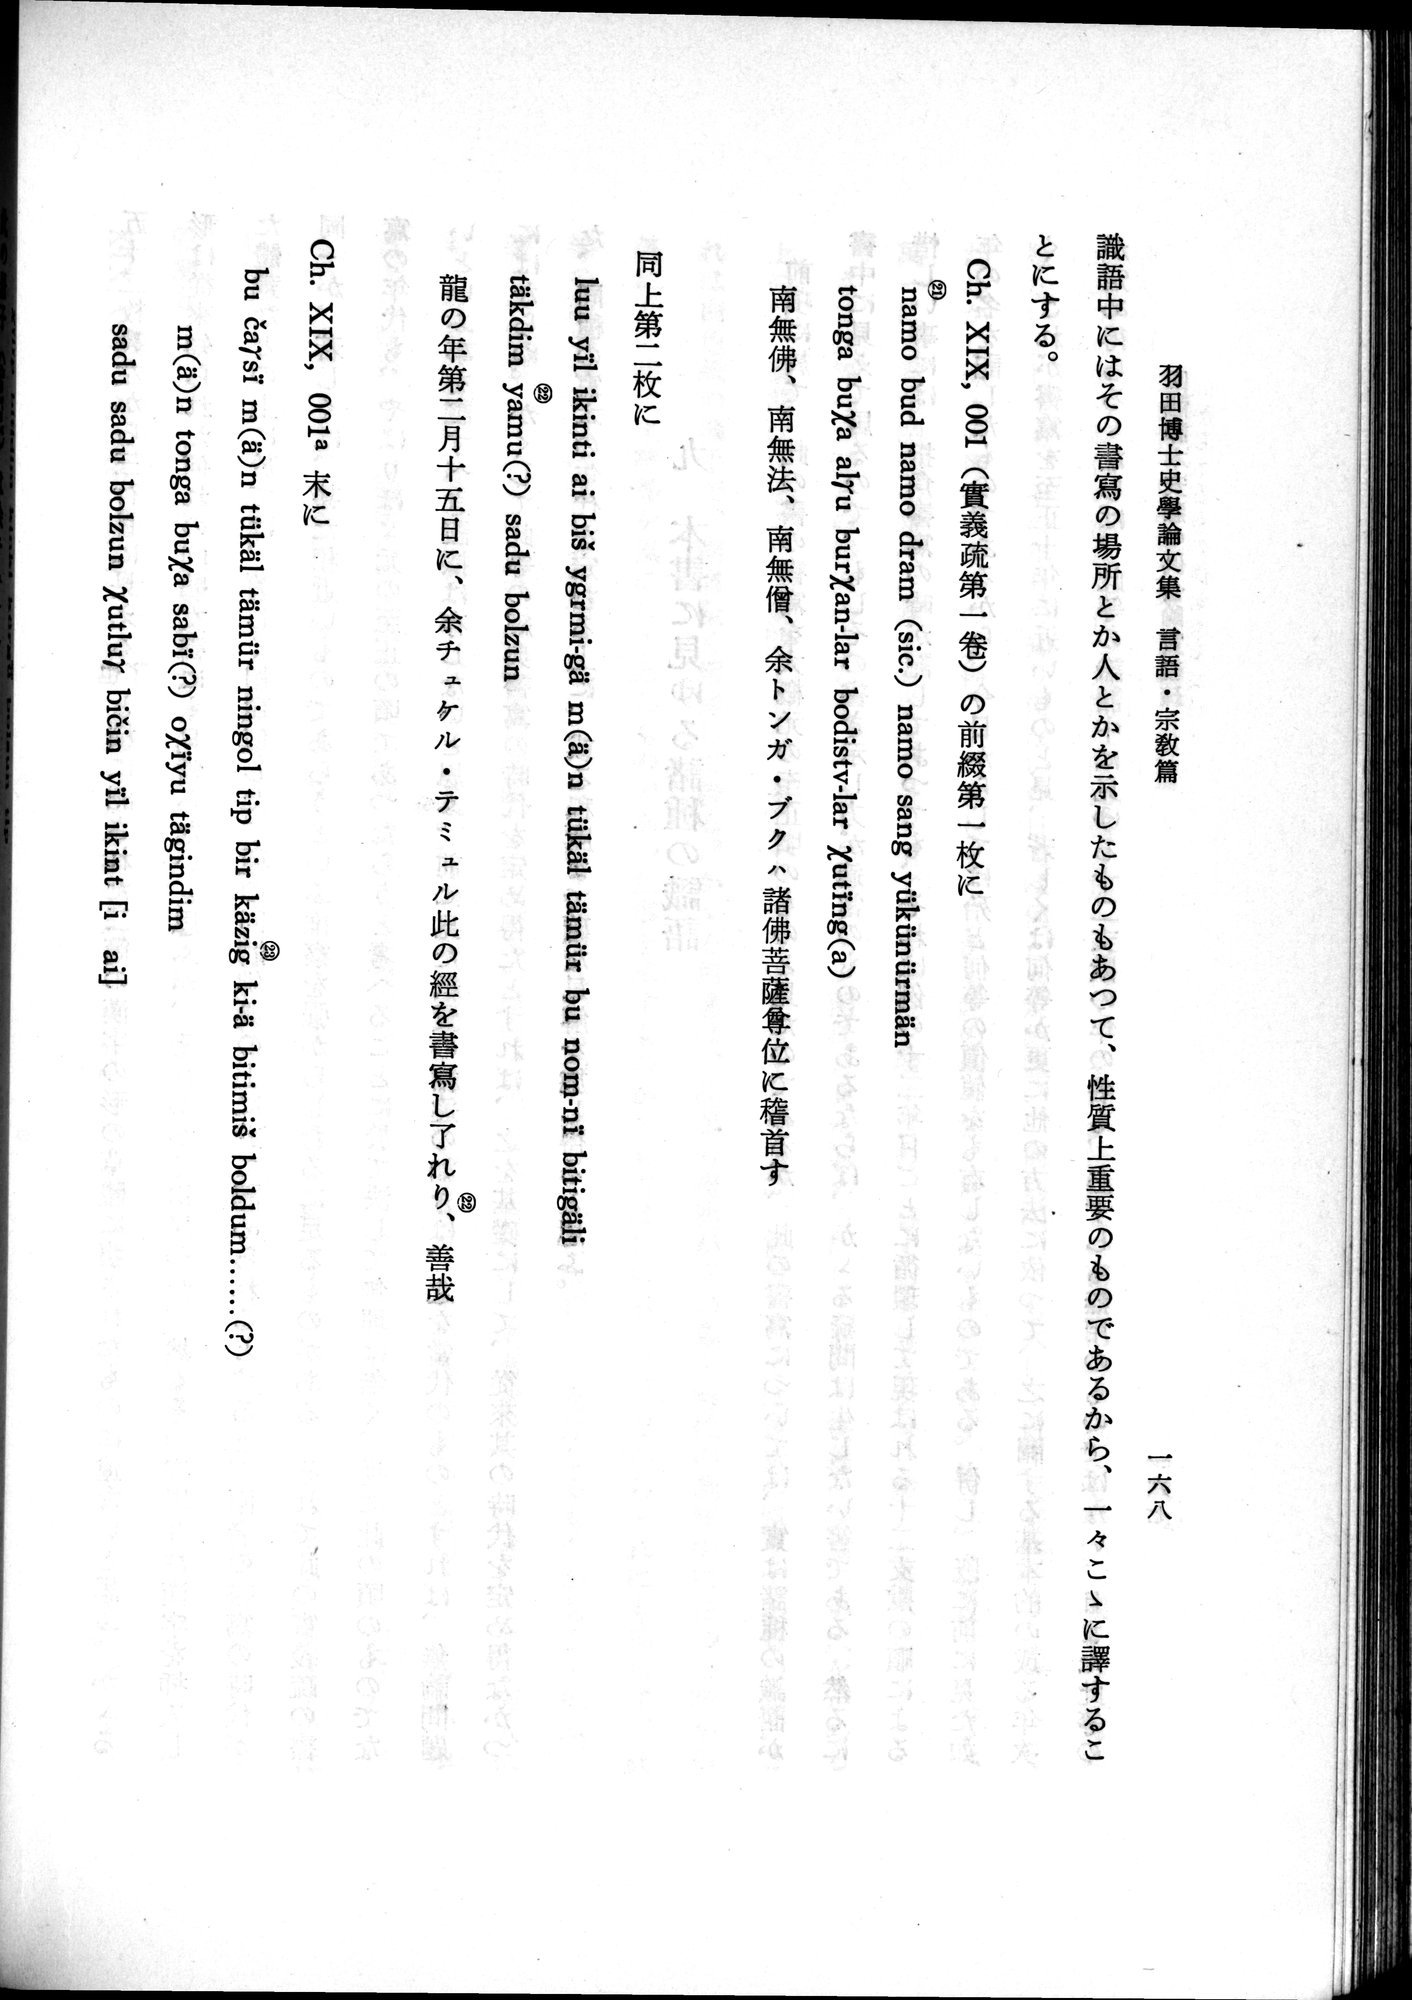 羽田博士史学論文集 : vol.2 / Page 230 (Grayscale High Resolution Image)